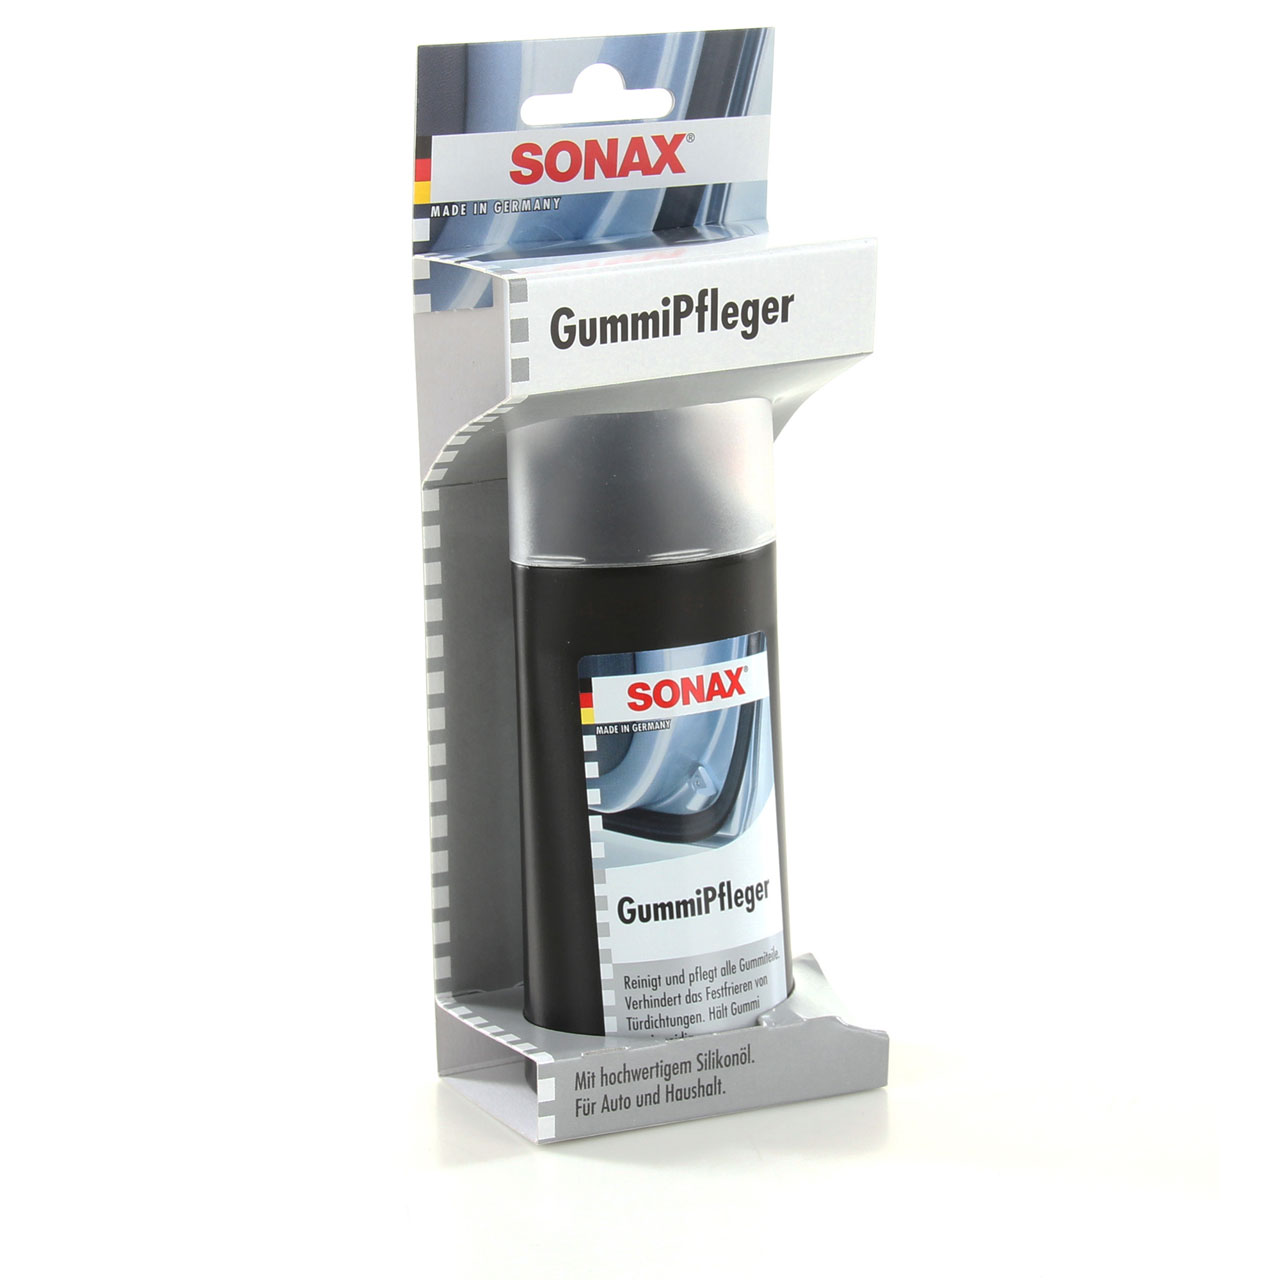 SONAX 340000 GummiPfleger mit hochwertigem Silikonöl für Auto+Haushalt 100ml